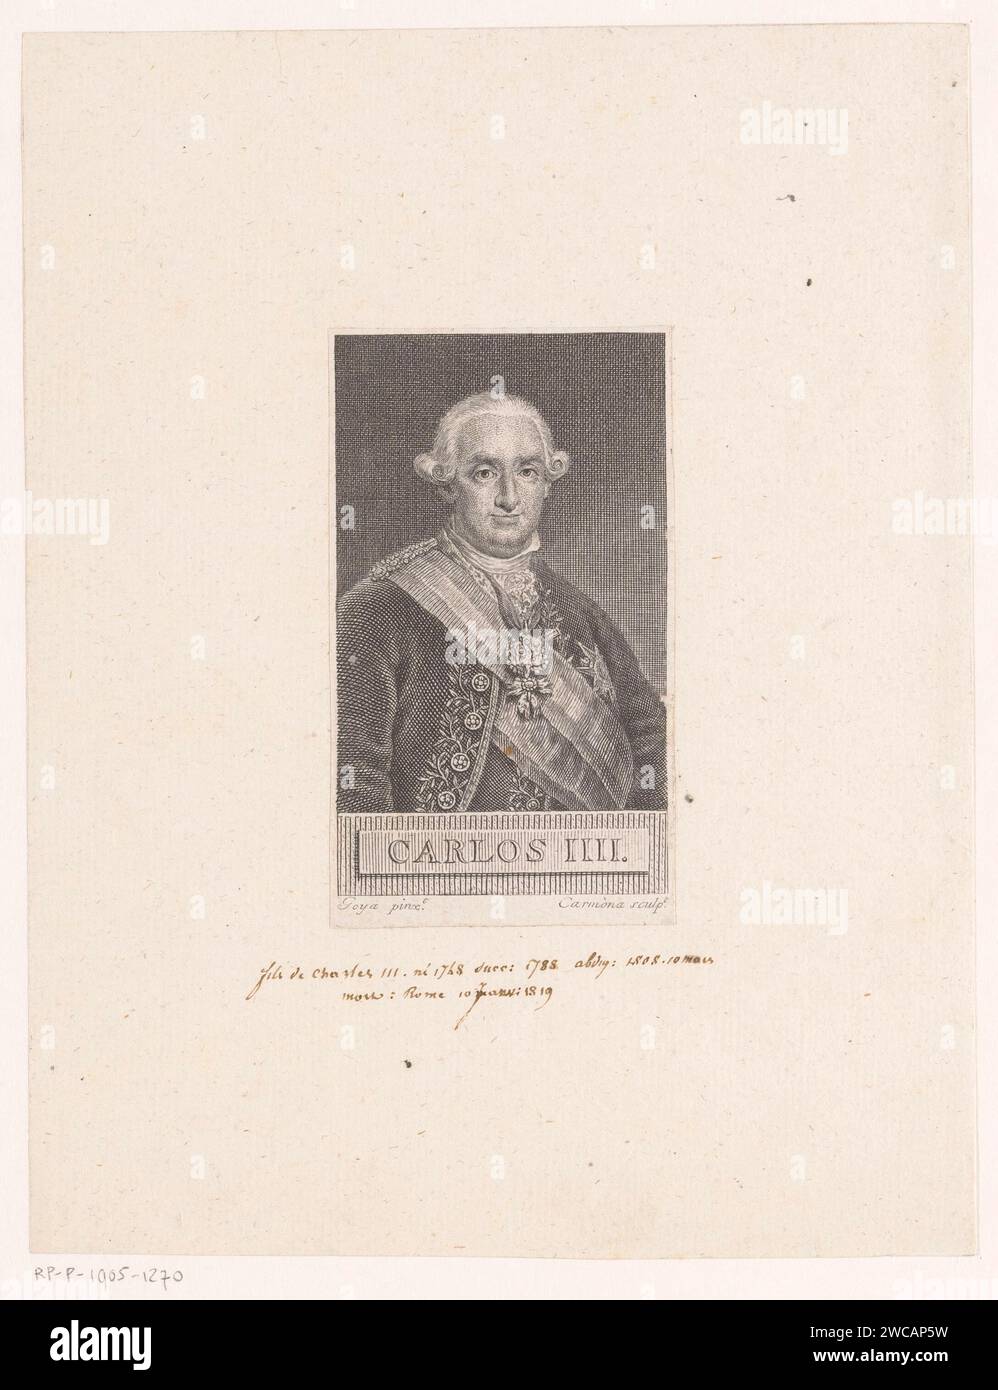 Portret Van Karel IV, Koning Van Spanje, Manuel Salvador Carmona, d'après Francisco de Goya, 1744 - 1820 imprimer Espagne papier gravure / gravure personnages historiques. souverain, souverain Banque D'Images